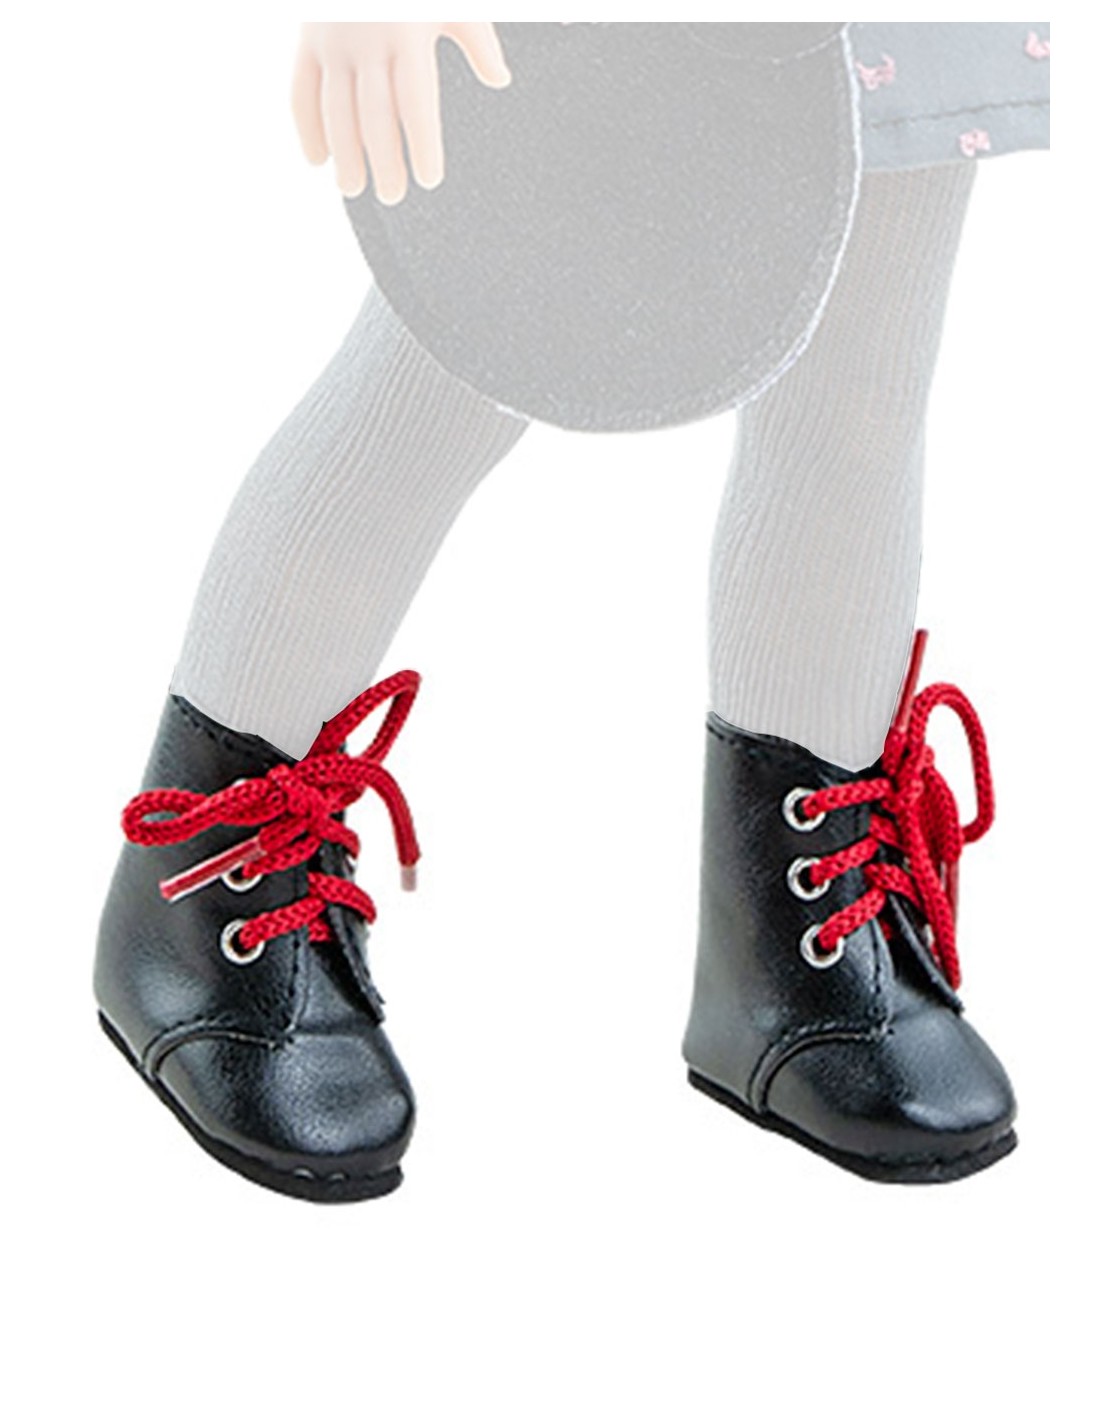 Botas Negras Cordones Rojos - Diversal.es - Tienda de juguetes y disfraces